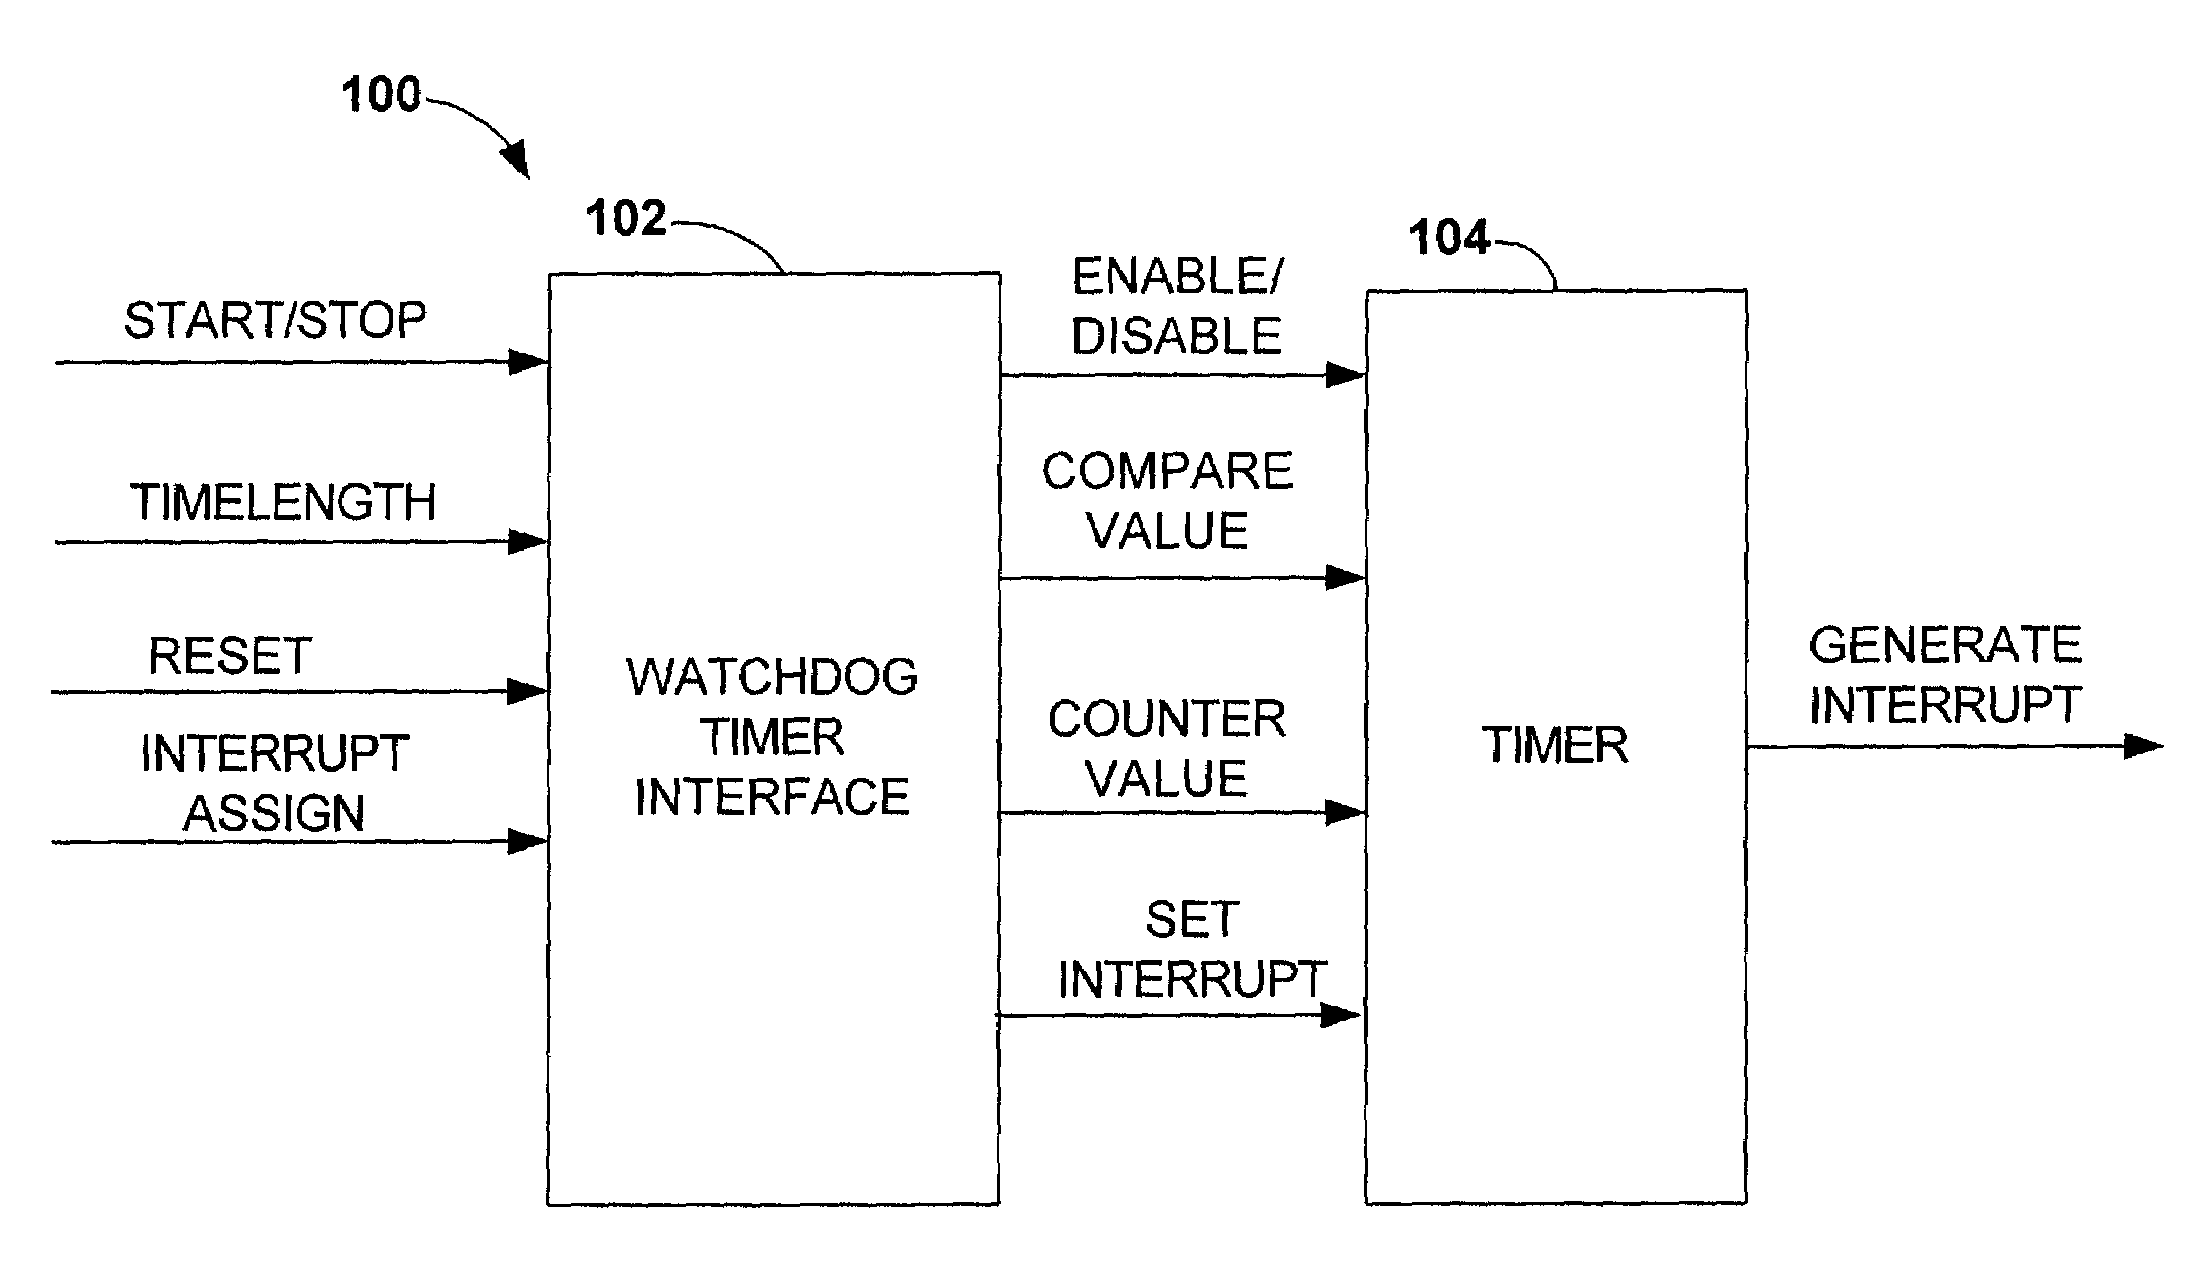 Watchdog timer using a high precision event timer